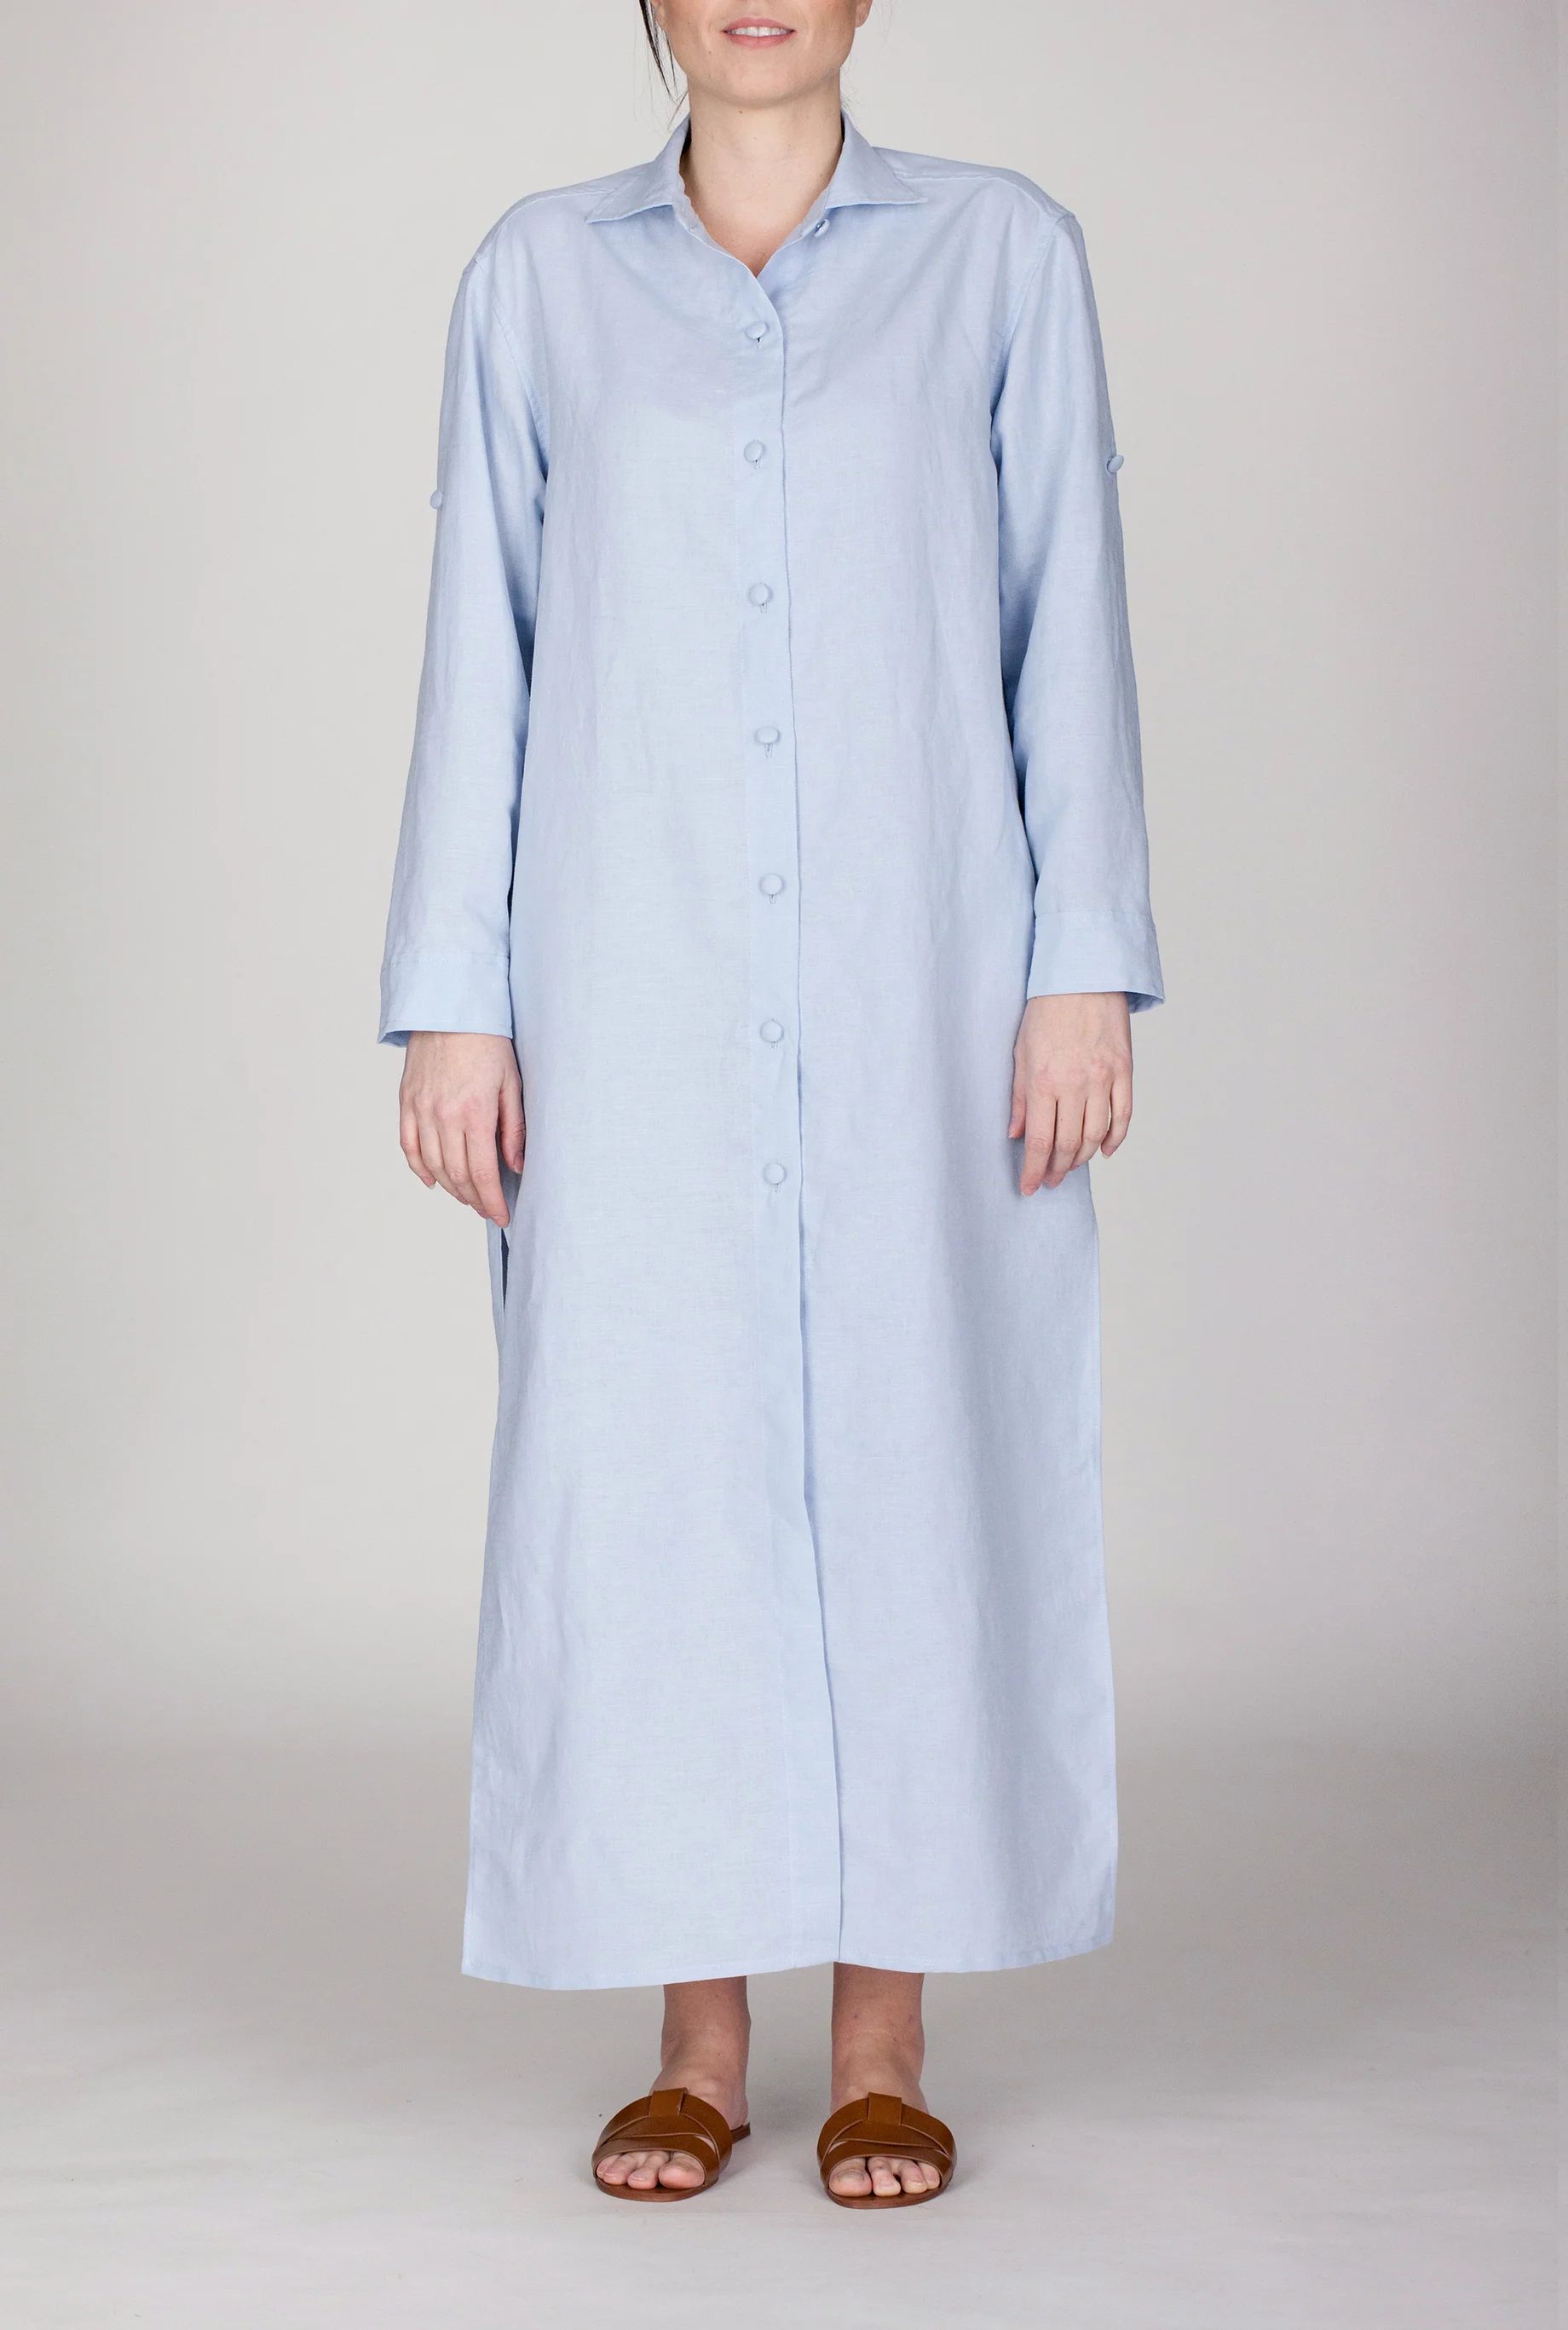 Womens linen dress | Marta Scarampi